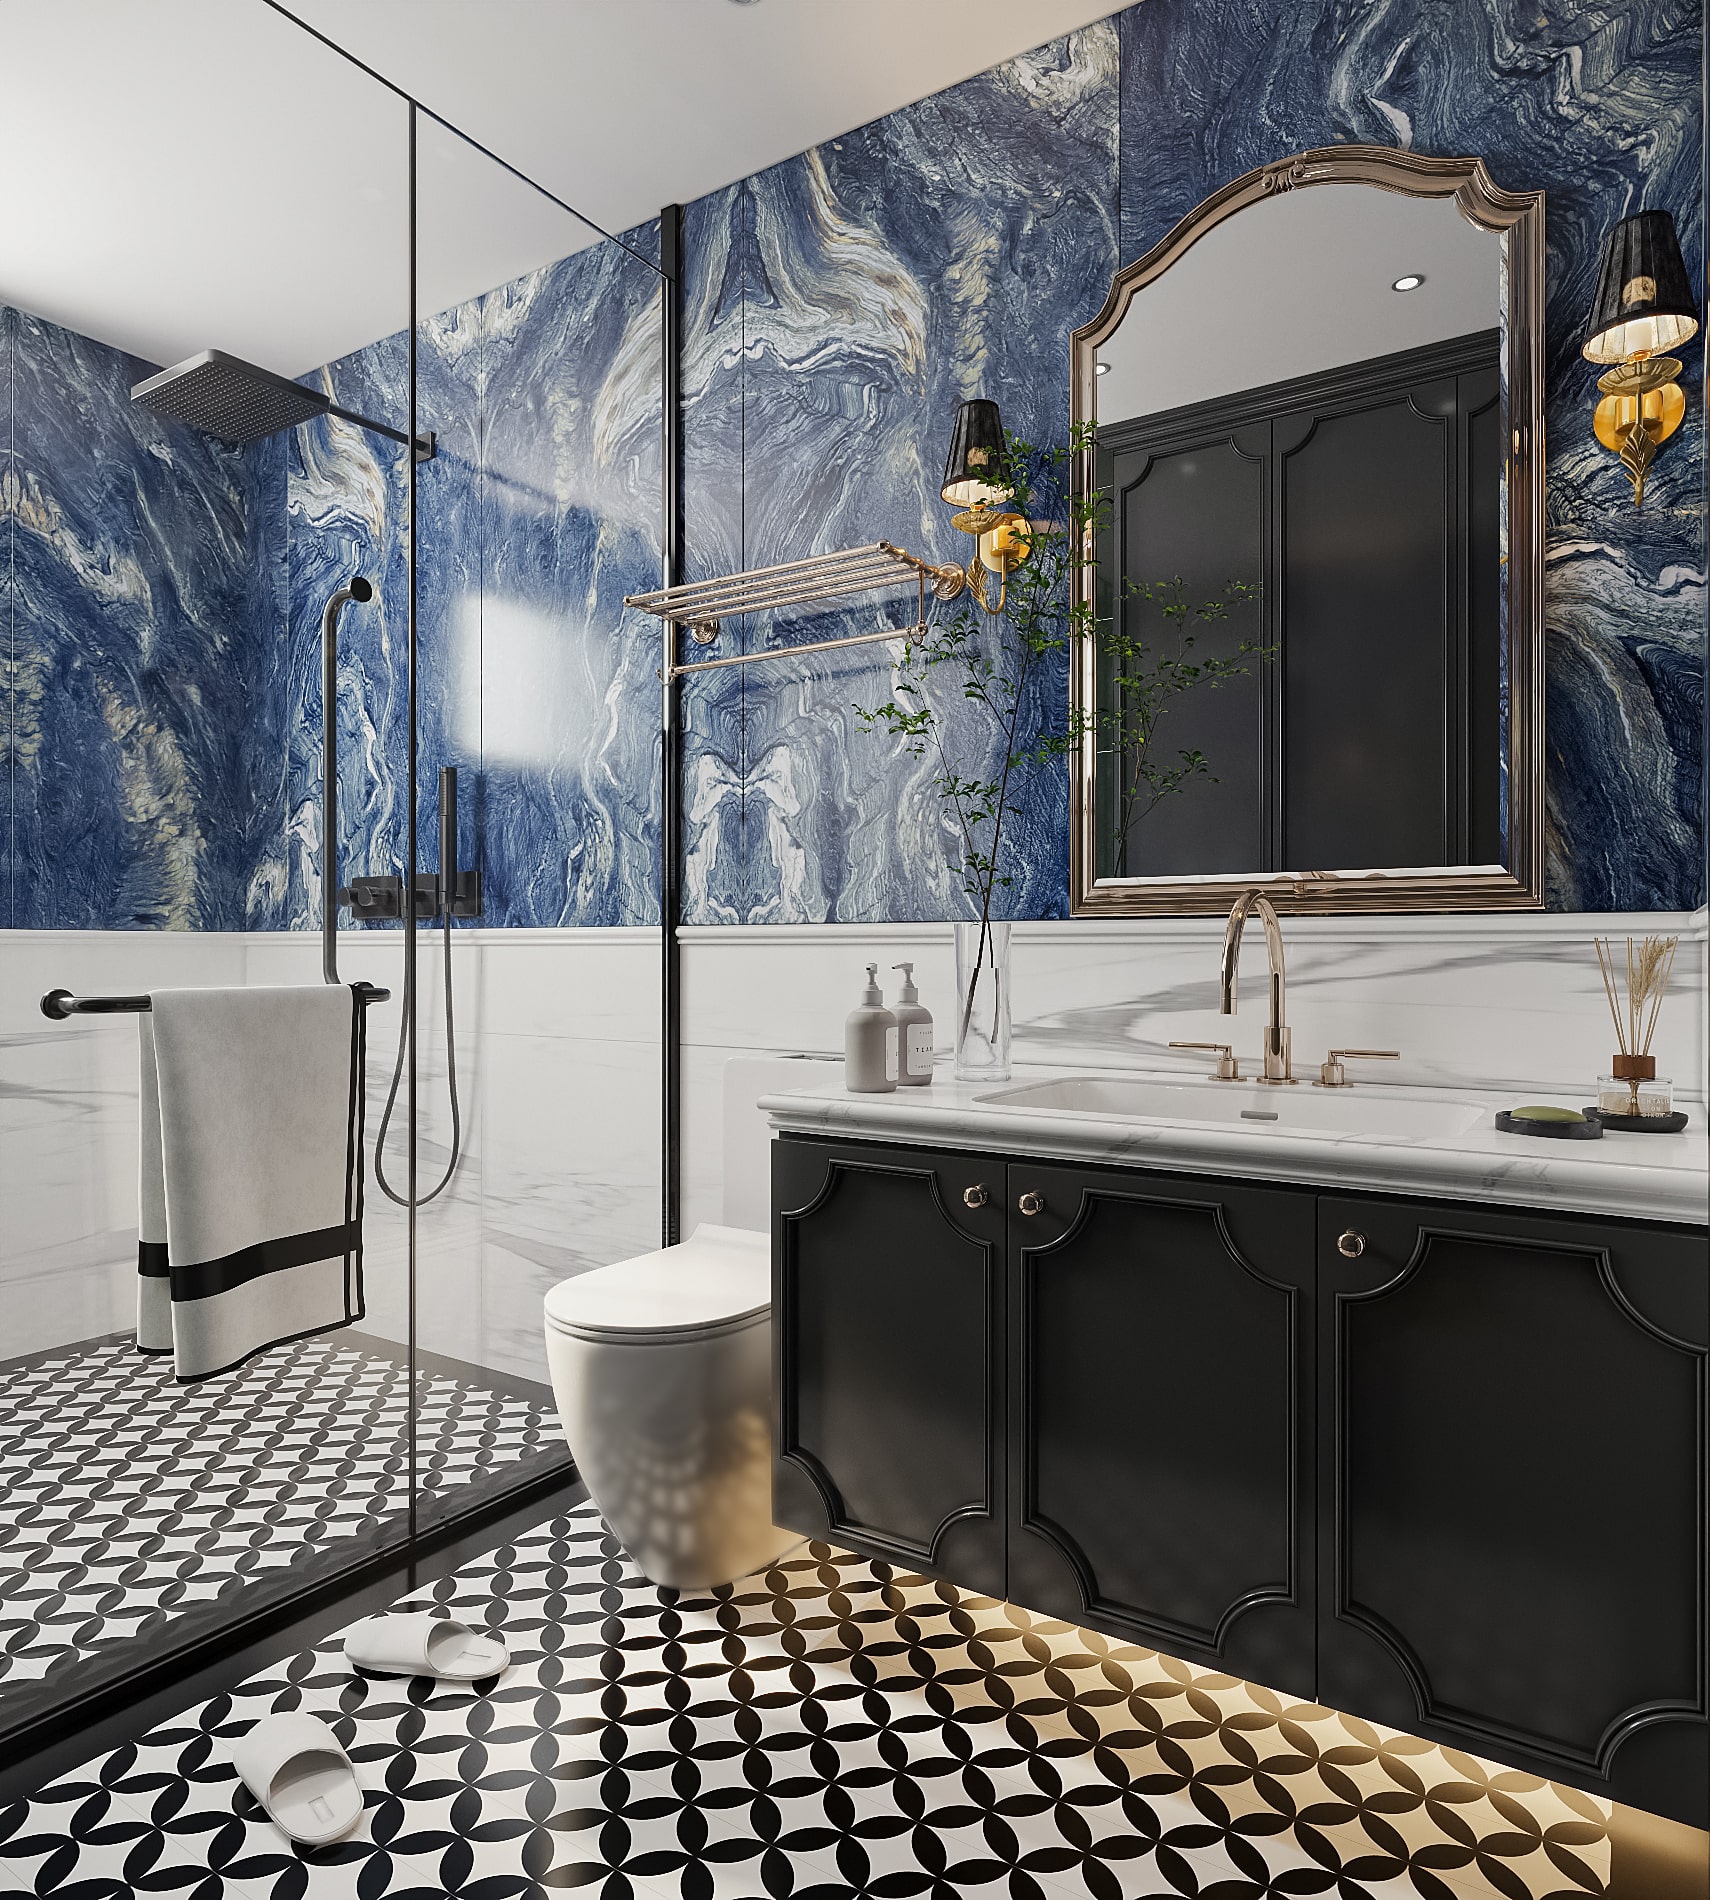 Hình ảnh mẫu gạch Statuario Natural với họa tiết Terrazzo được sử dụng cho không gian phòng tắm hiện đại